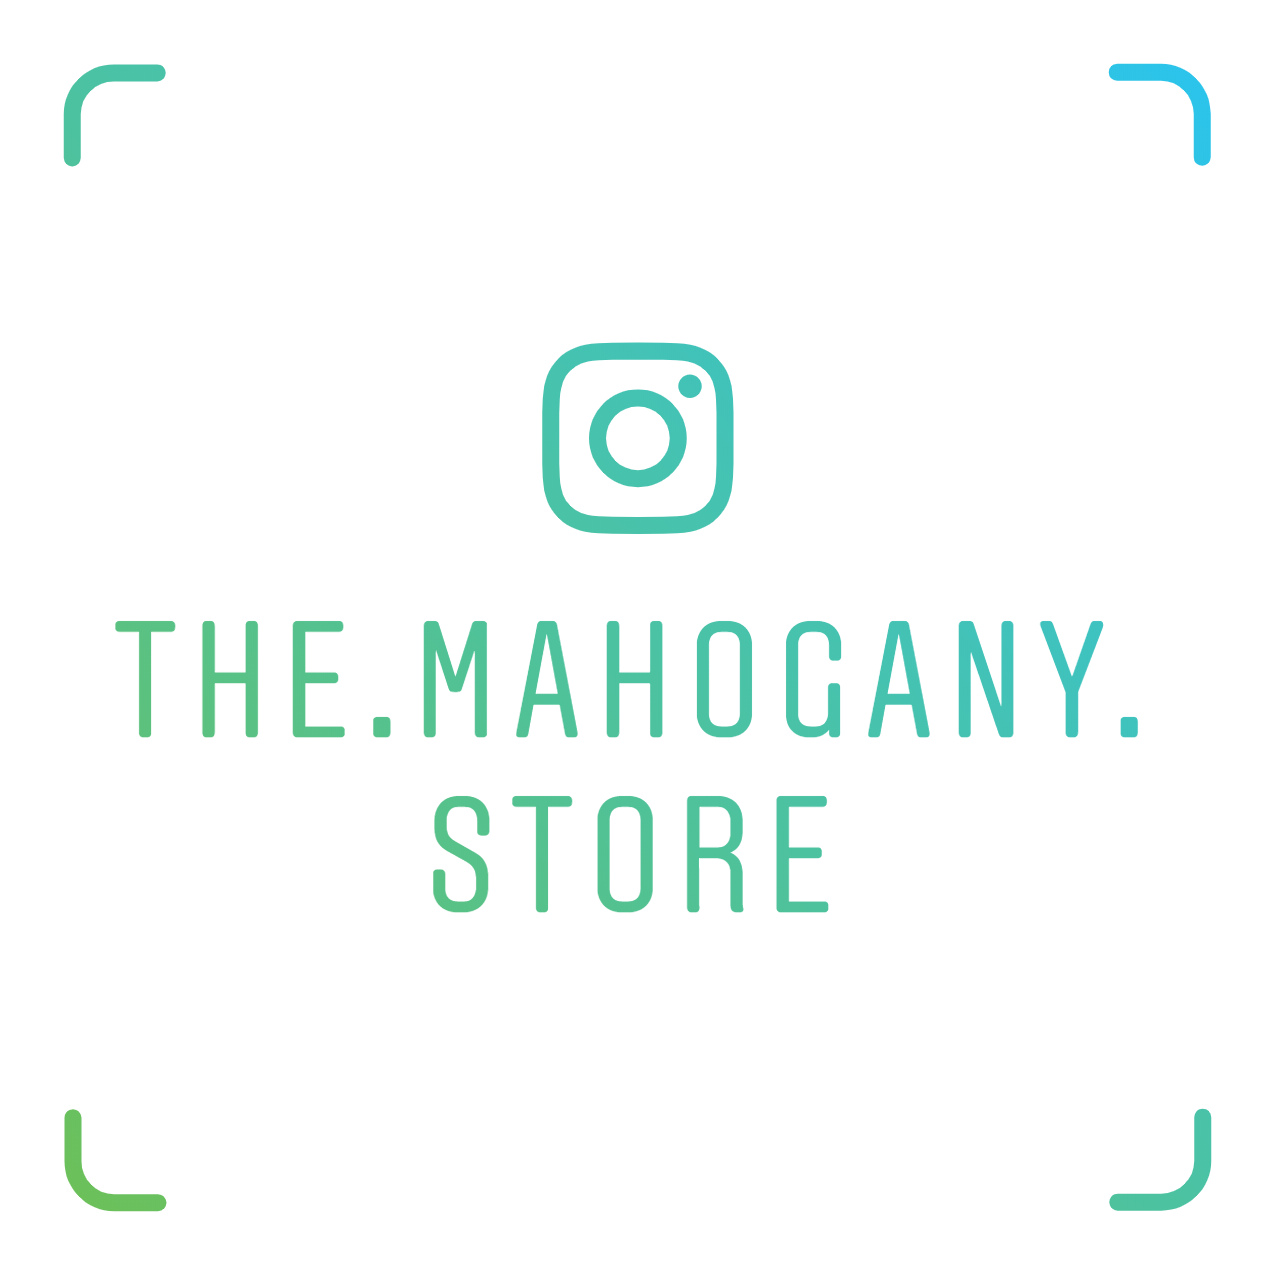 The Mahogany Store